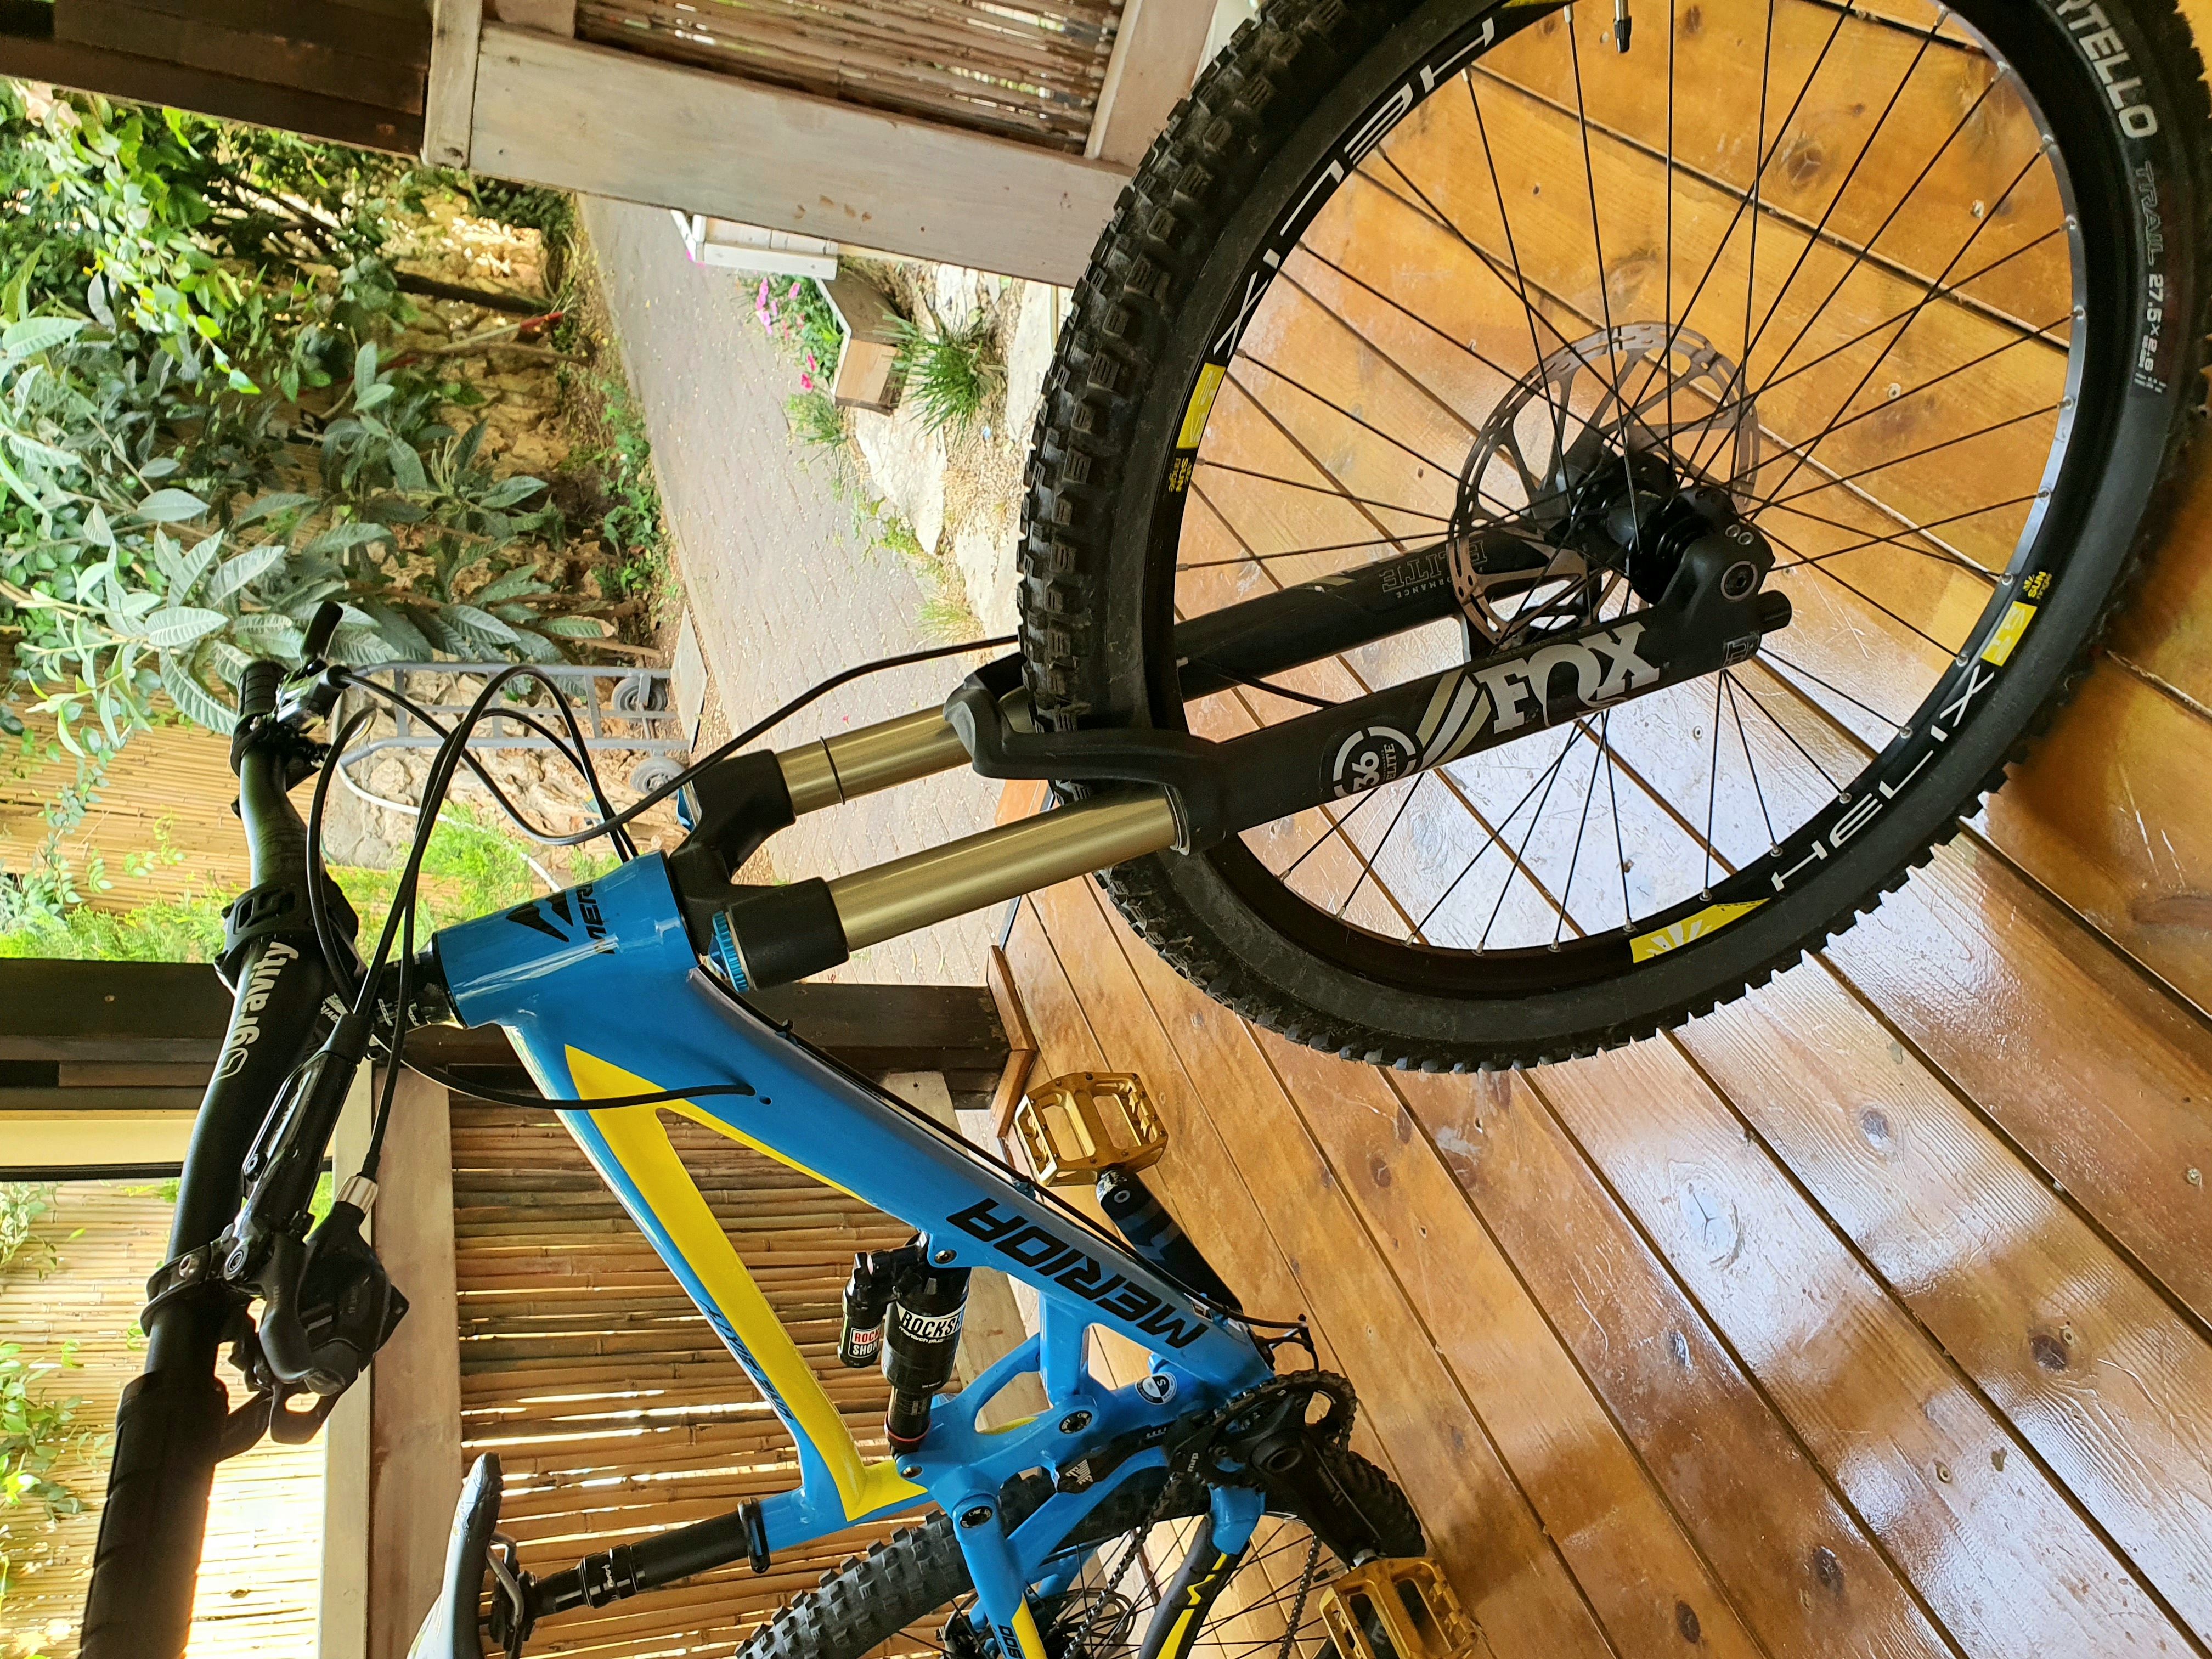 תמונה 5 ,Merida one sixty 7.900  למכירה בשלומי  אופניים  הרים שיכוך מלא